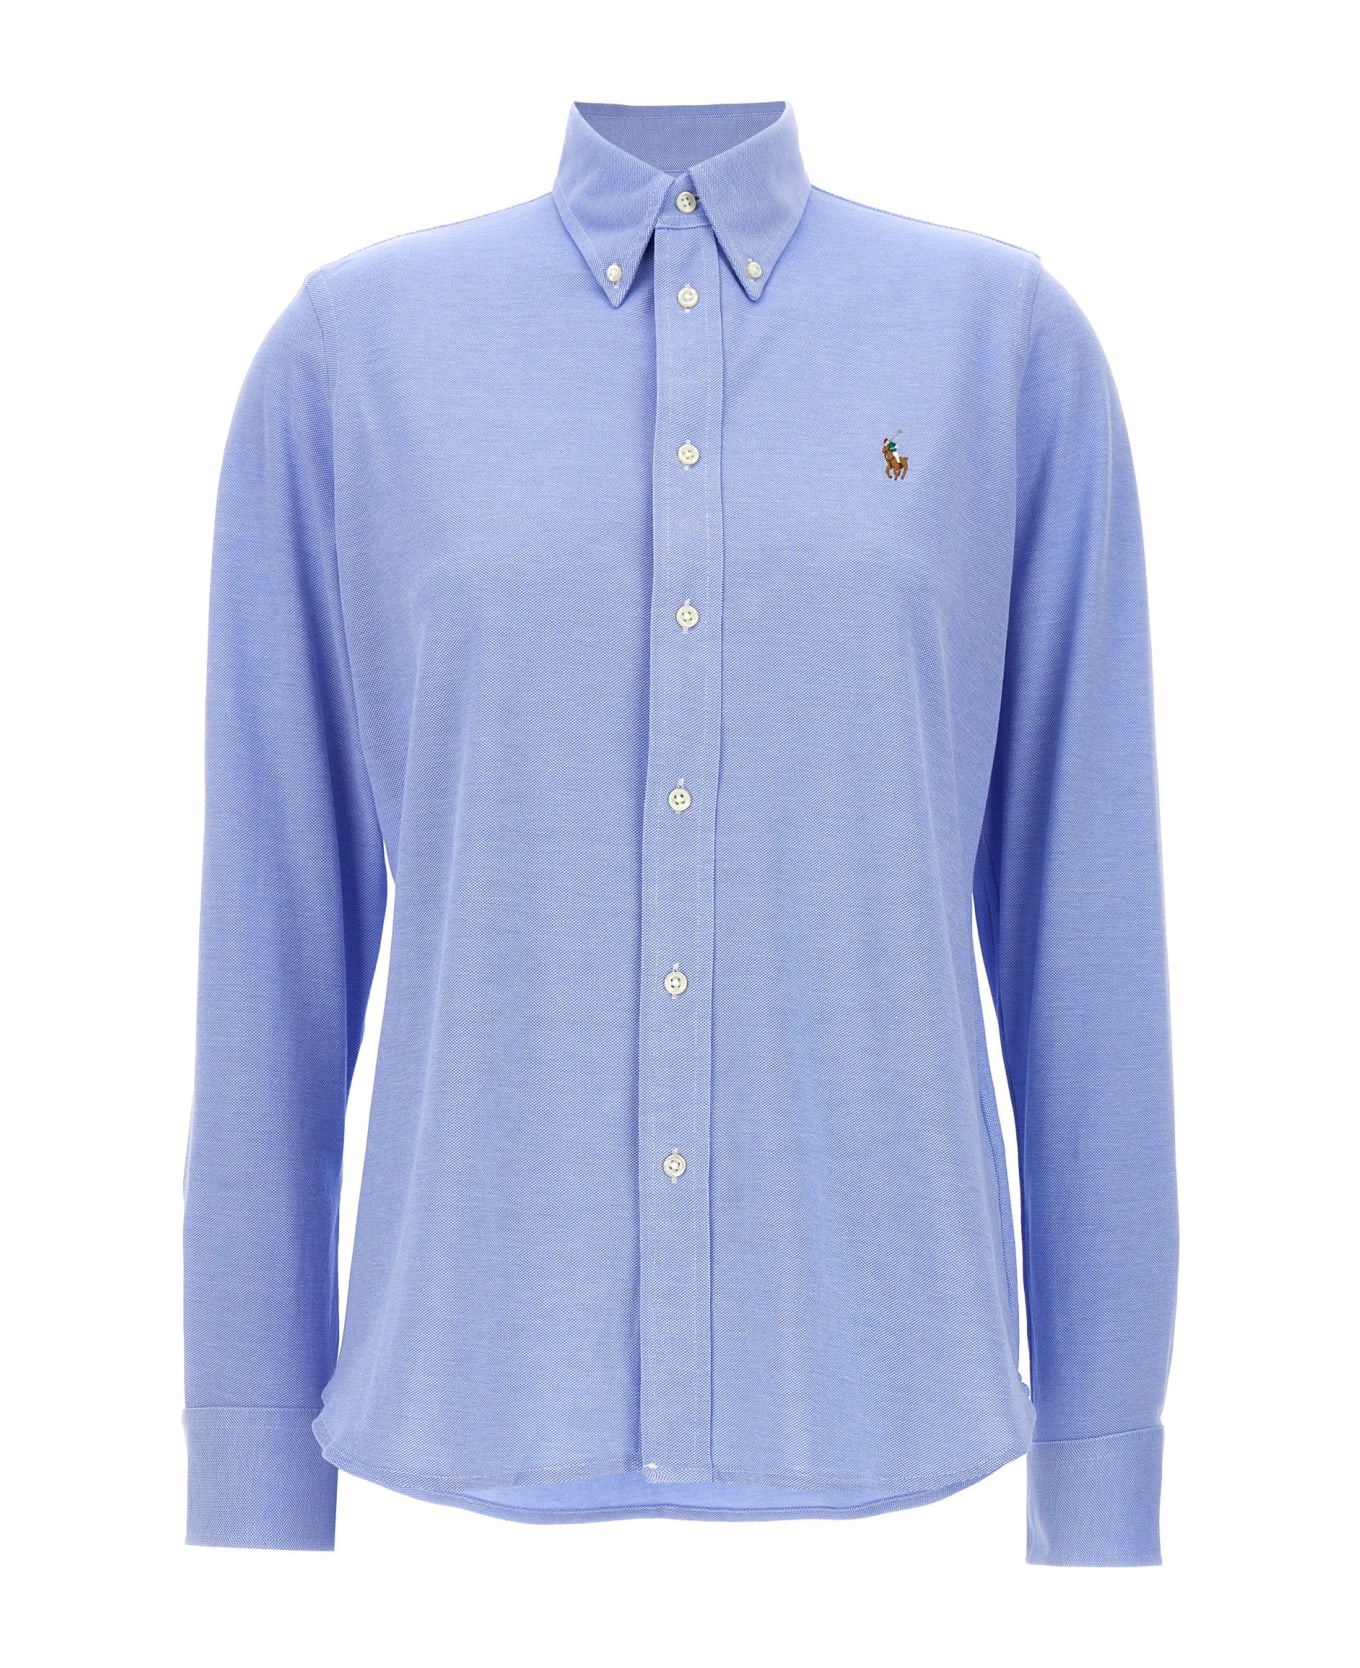 Ralph Lauren 'heidi' Shirt - Light Blue シャツ